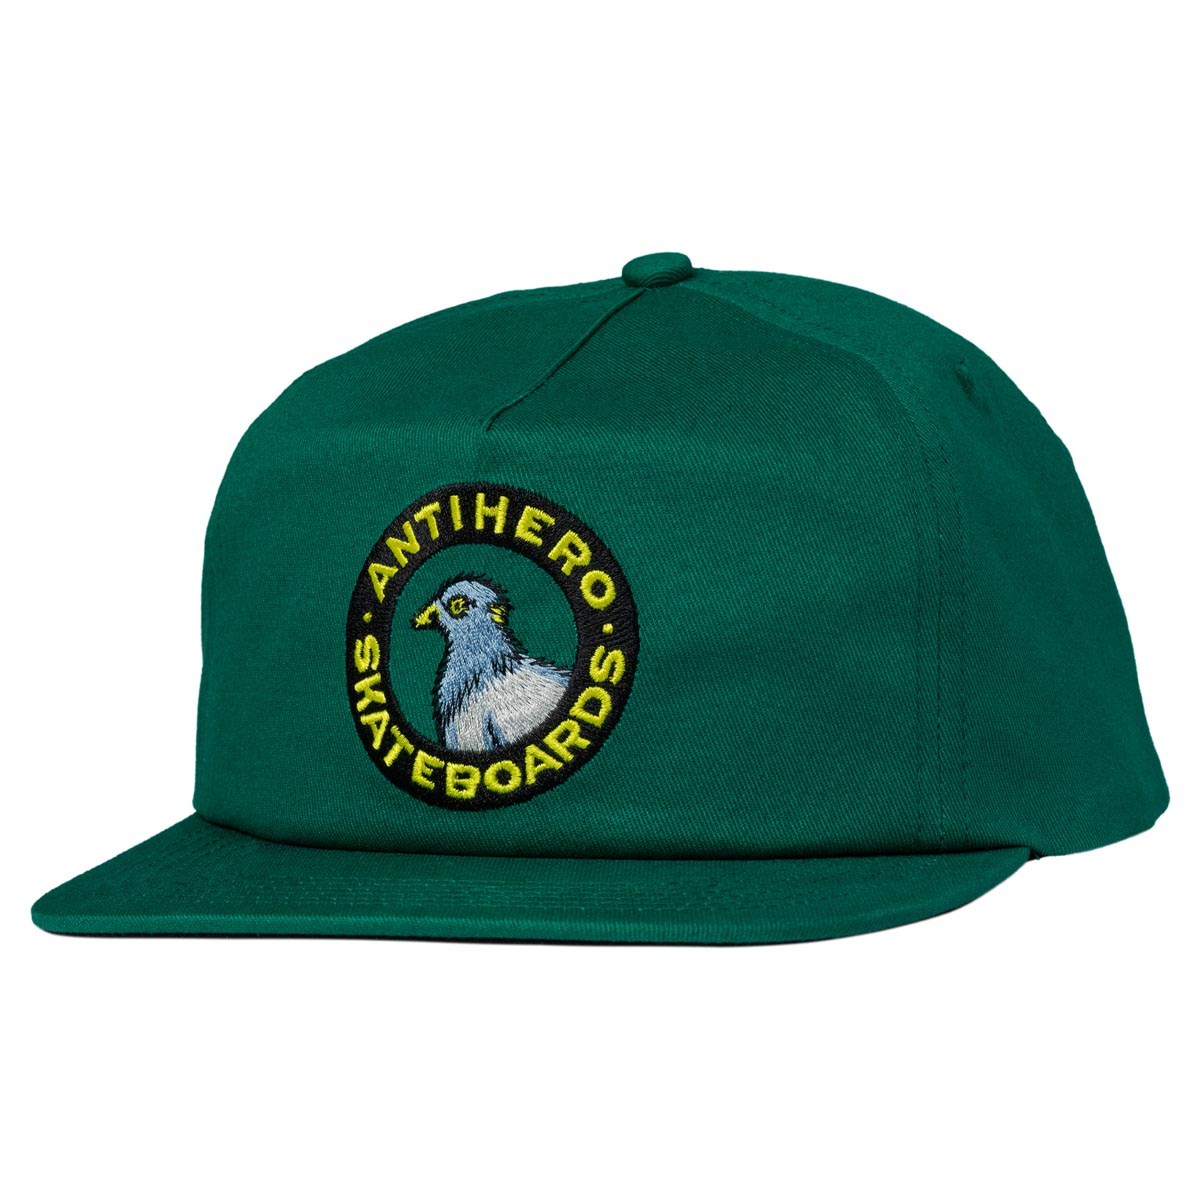 Anti-Hero Pigeon Round Snapback Hat - Dark Green image 1